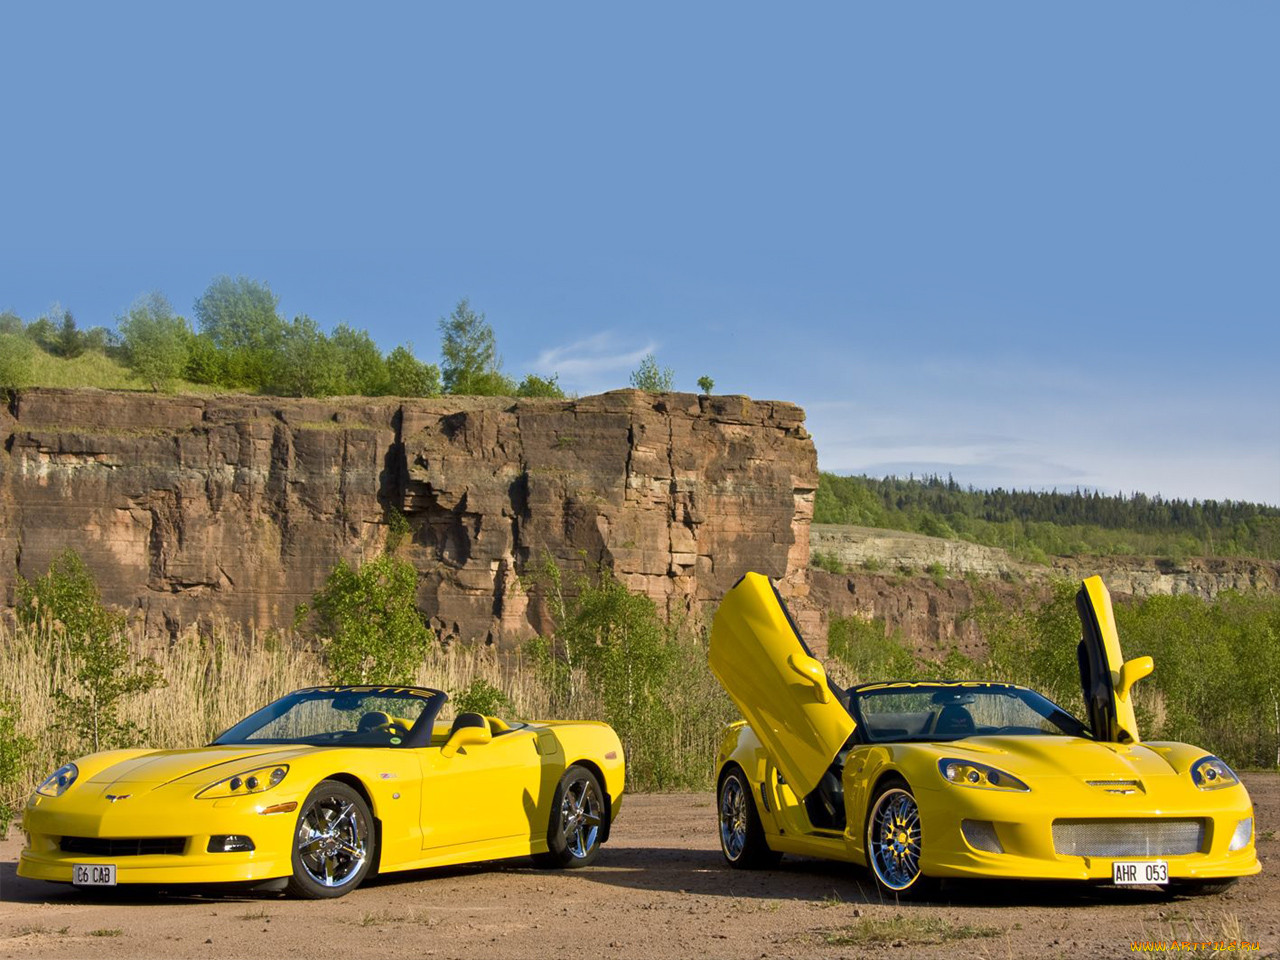 Много желтых машин на фото